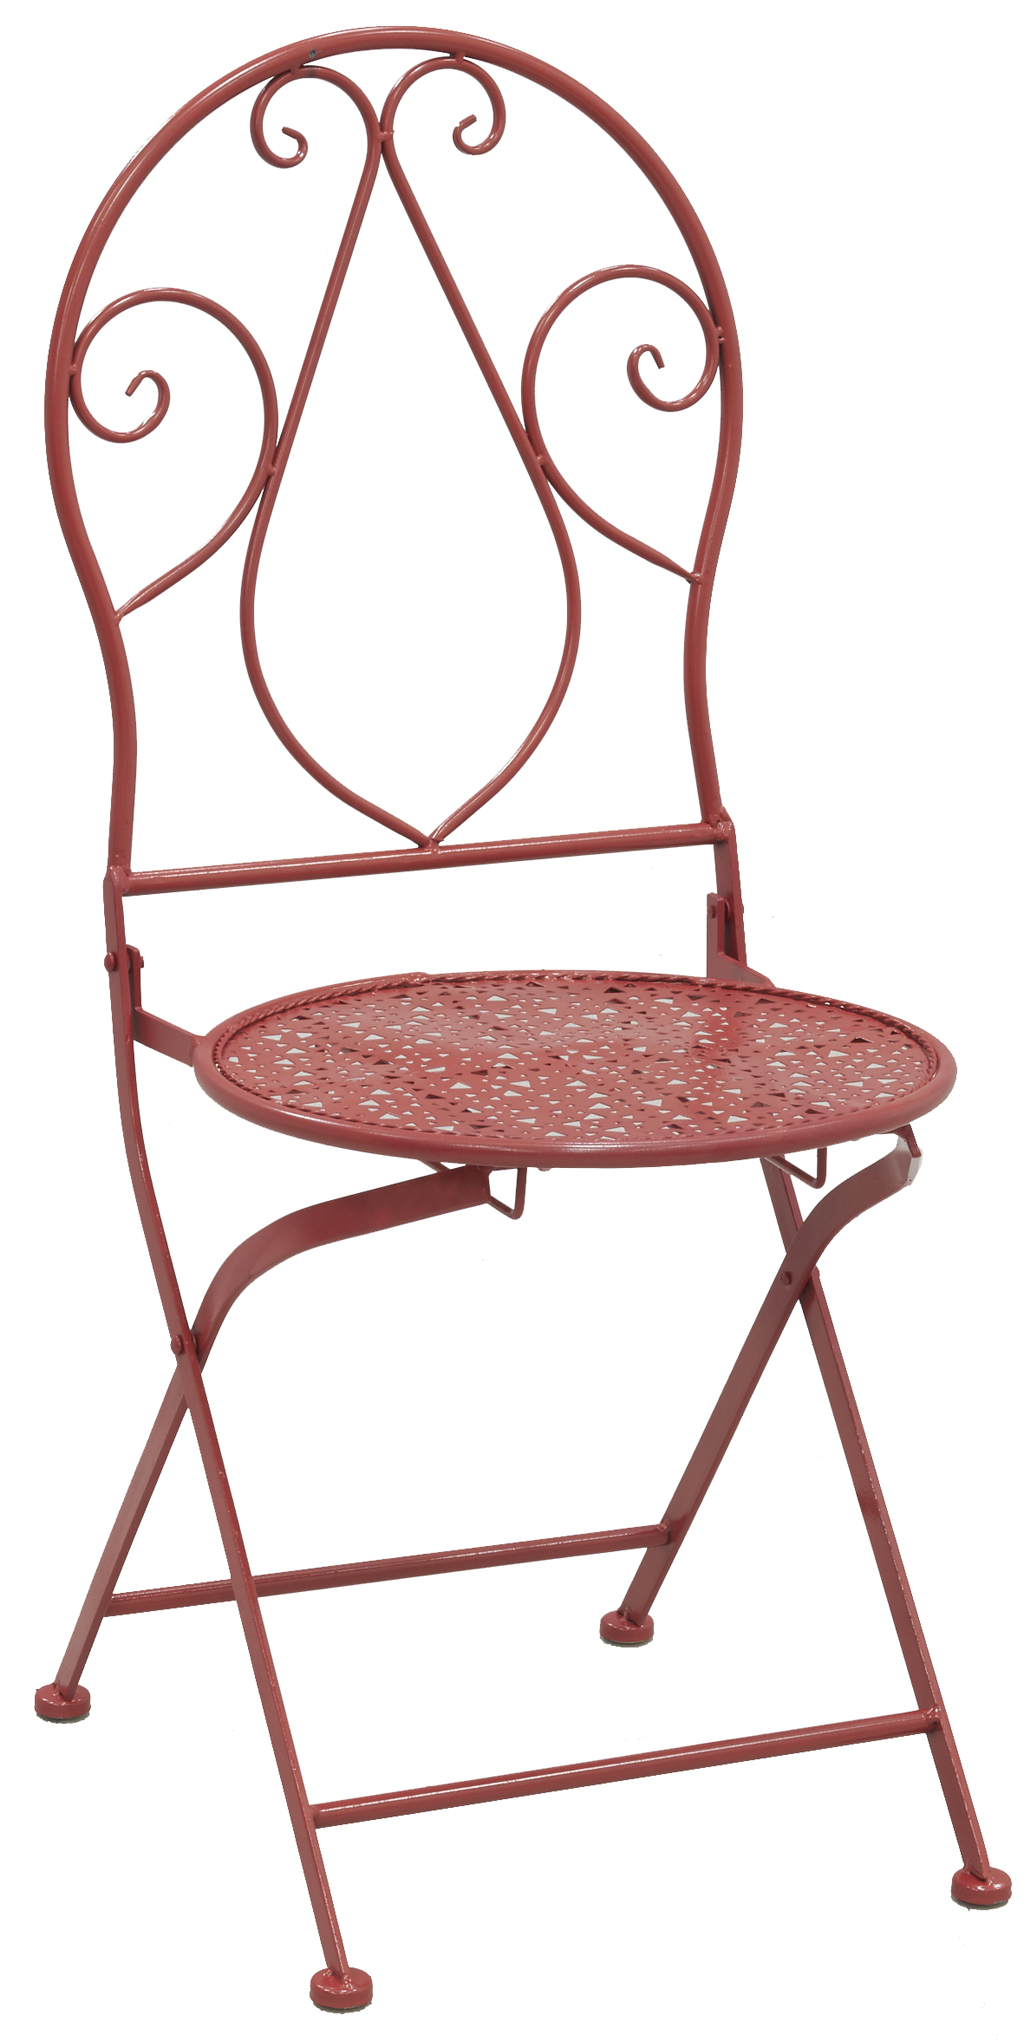 Chaise pliante en métal rouge